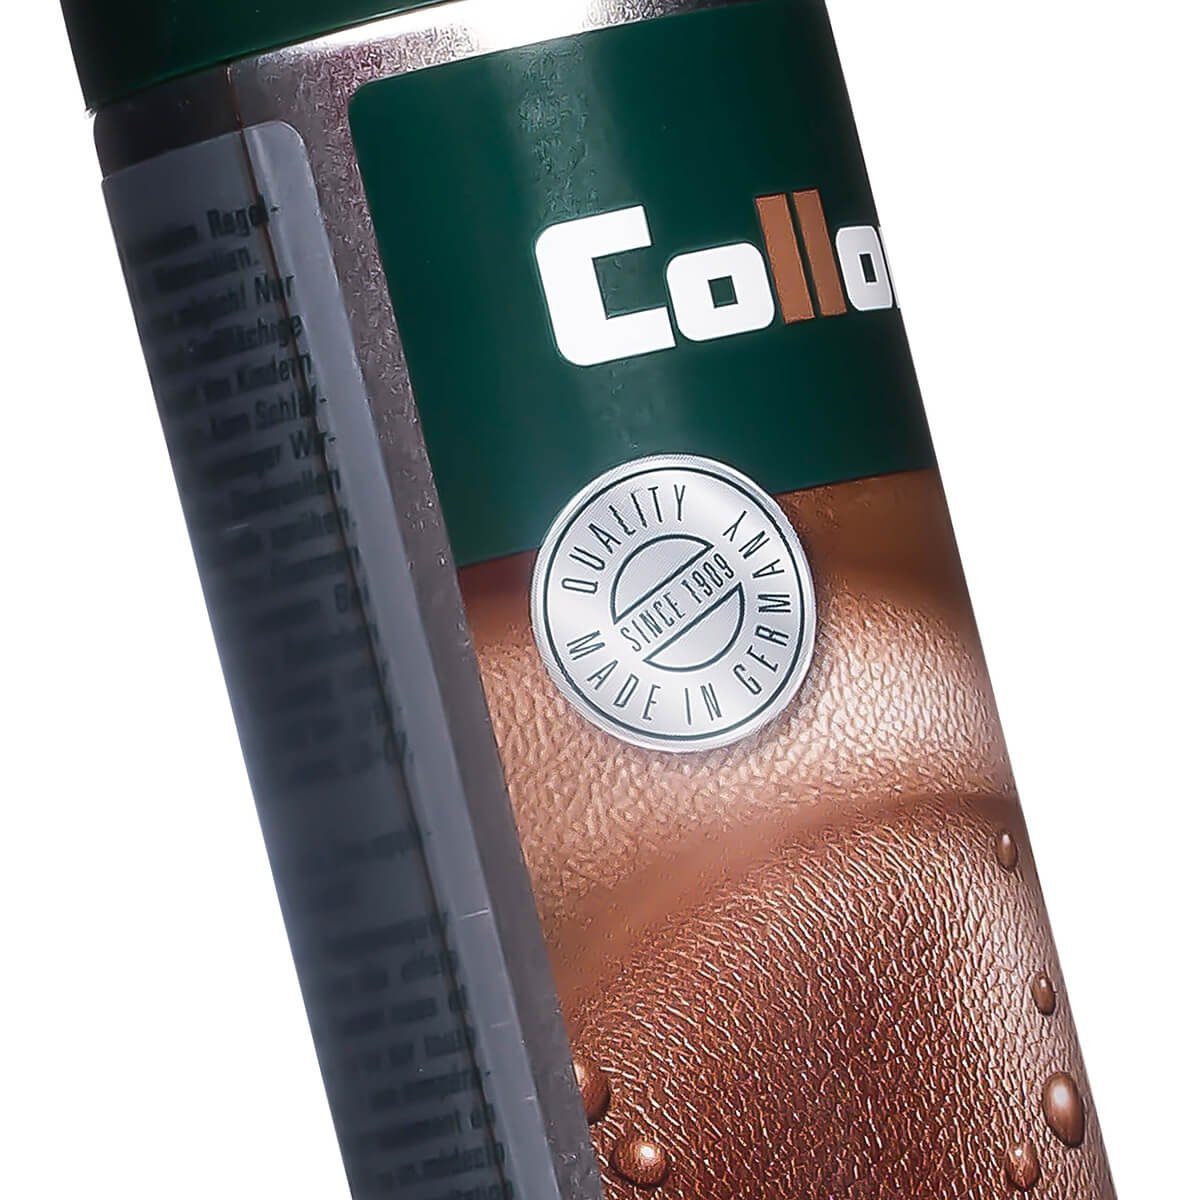 Collonil Leather Proof - alle ohne Materialien Imprägnierspray für Treibgas Schuh-Imprägnierschaum